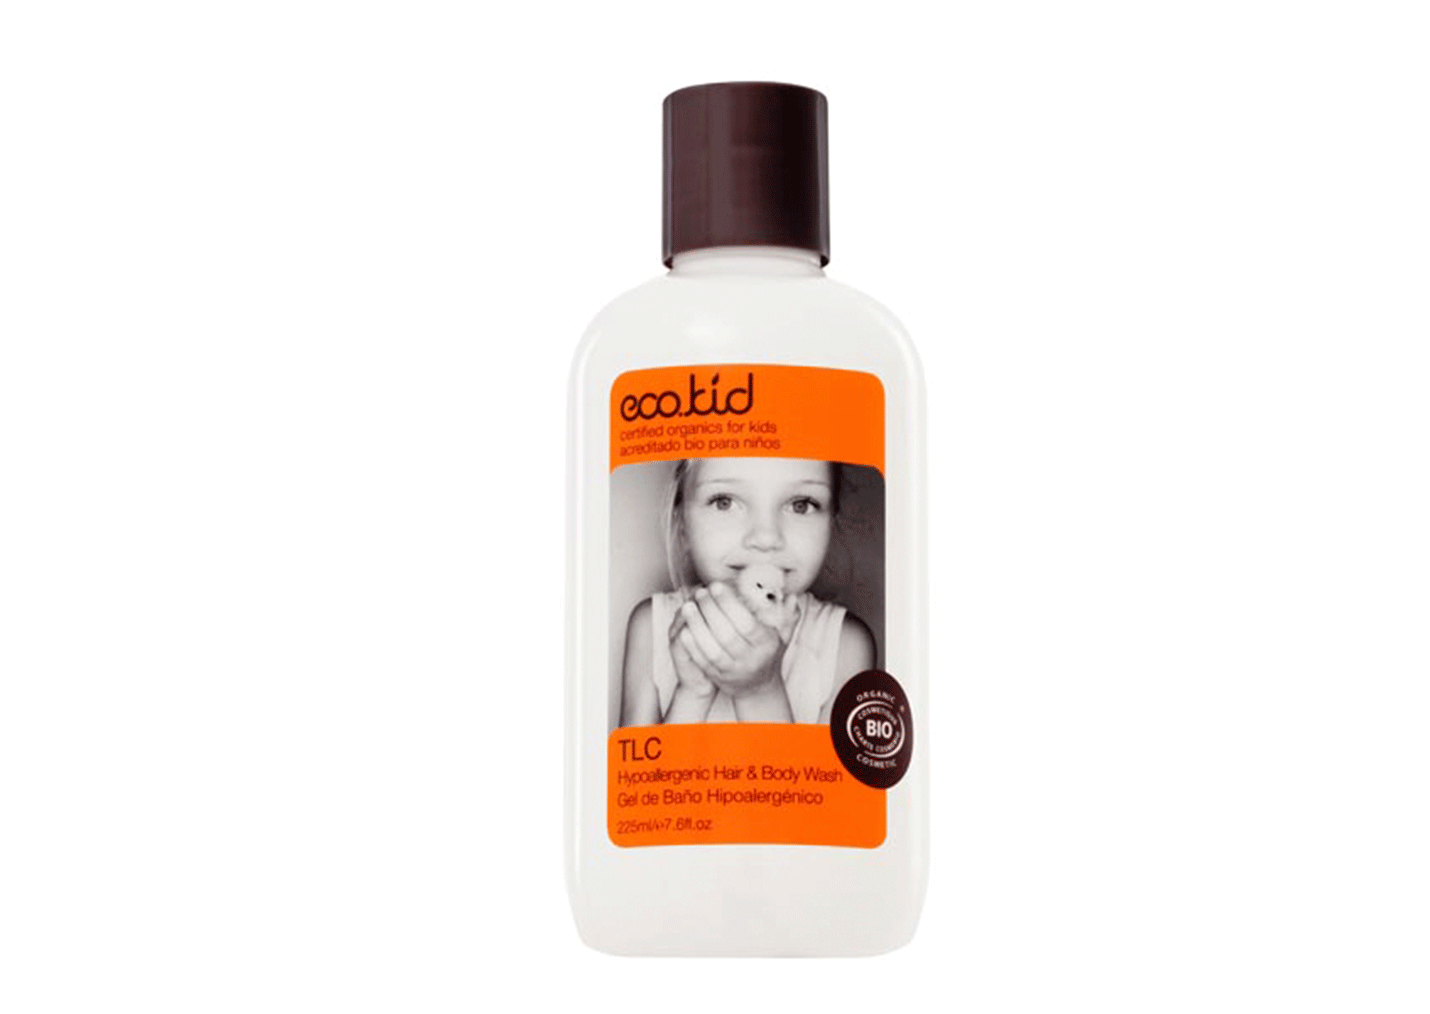 TLC hair & body wash shampoo eco.kid puur company